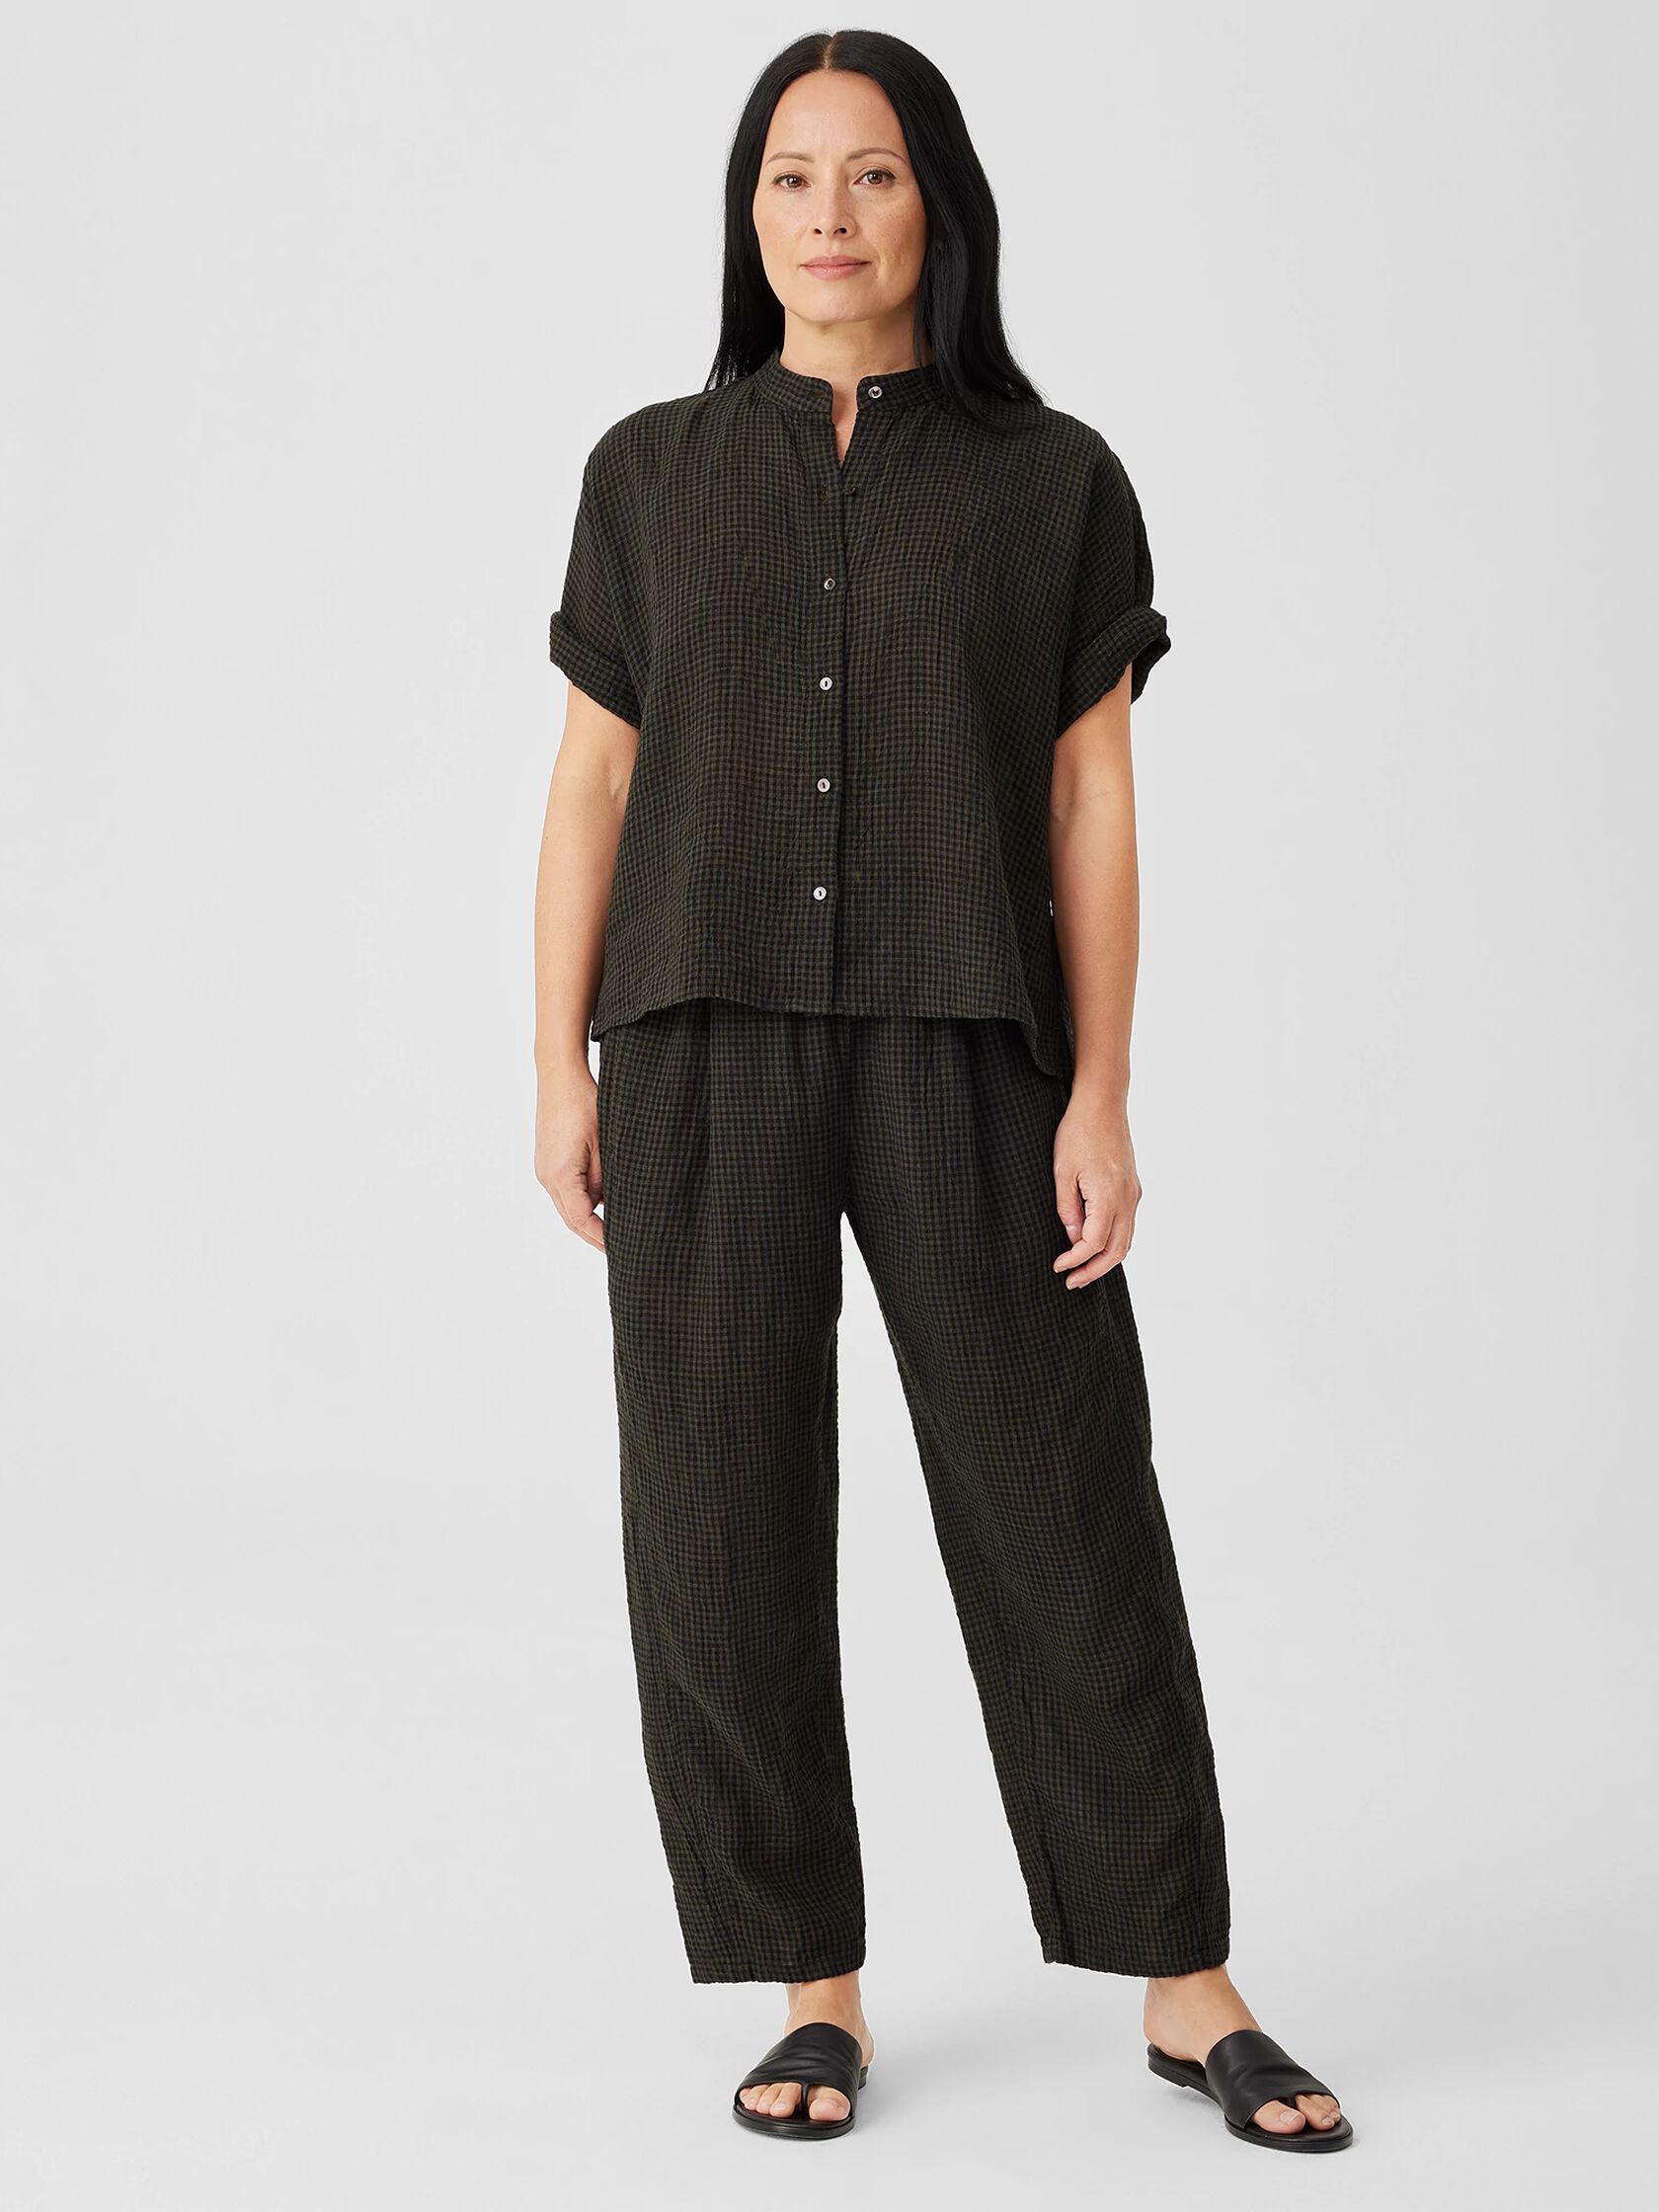 Puckered Organic Linen Short-Sleeve Shirt